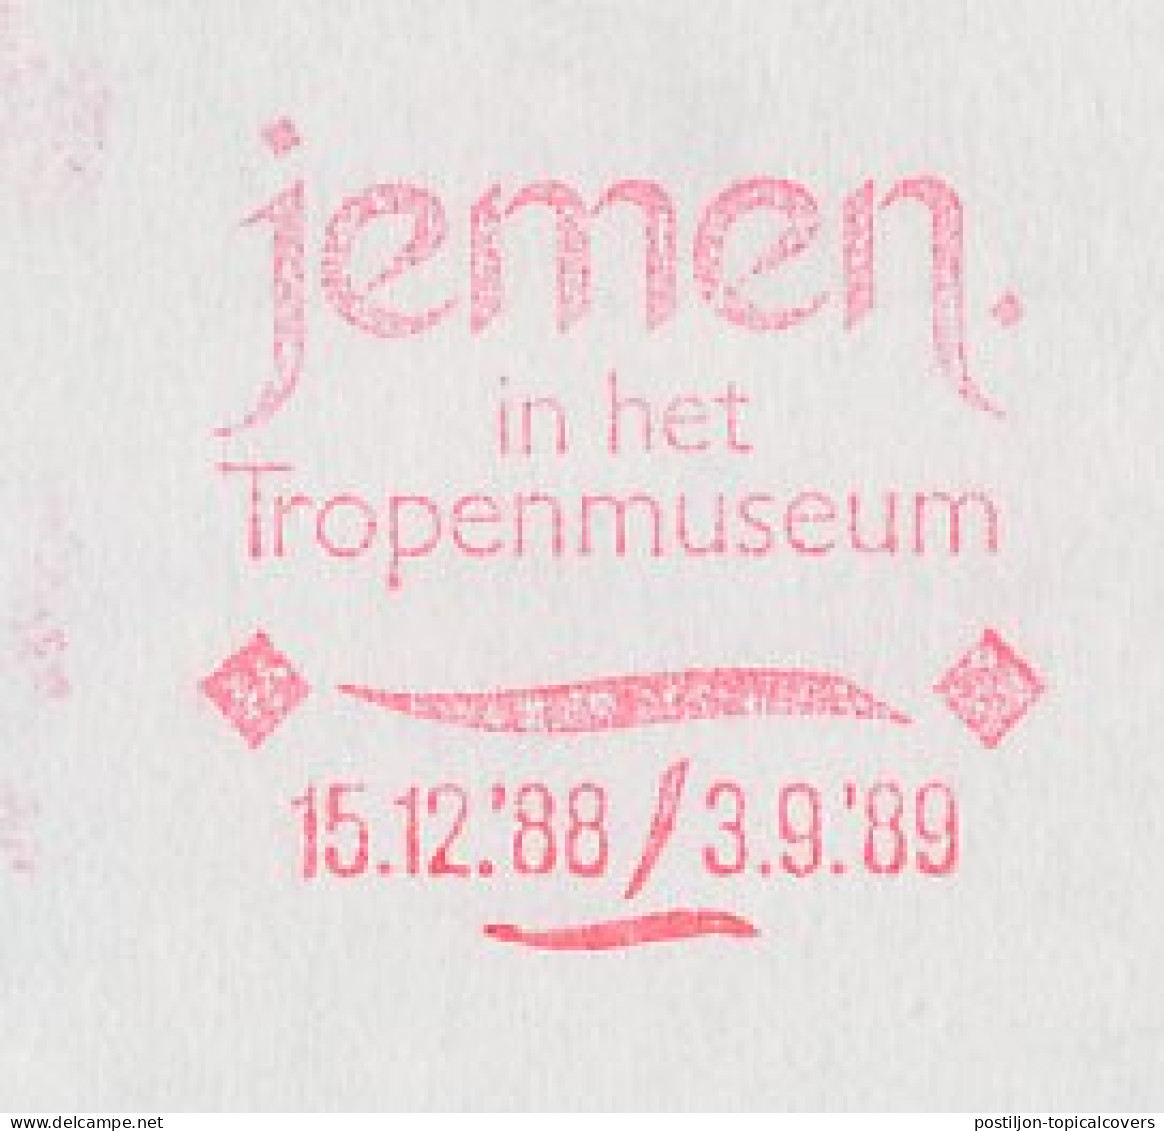 Meter Cover Netherlands 1989 Jemen / Yemen - Exhibition Tropical Museum - Non Classificati